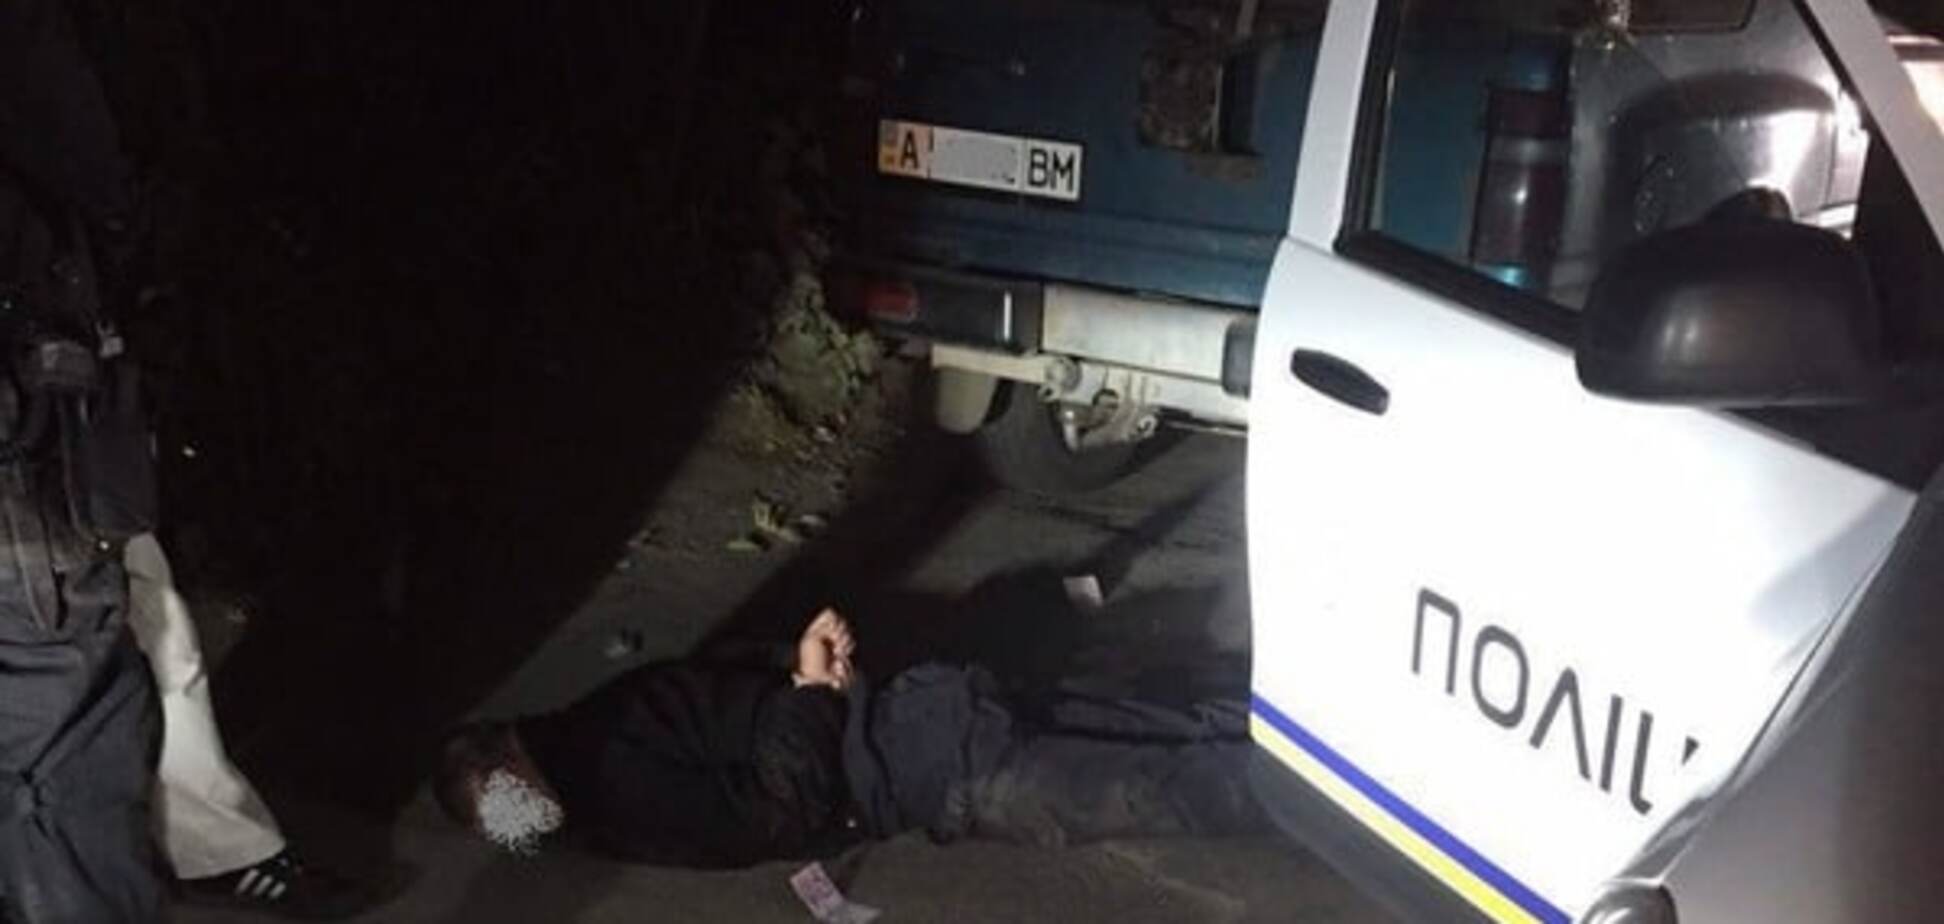 Чтобы не штрафовать за пьянство: на Киевщине коп требовал от водителя взятку